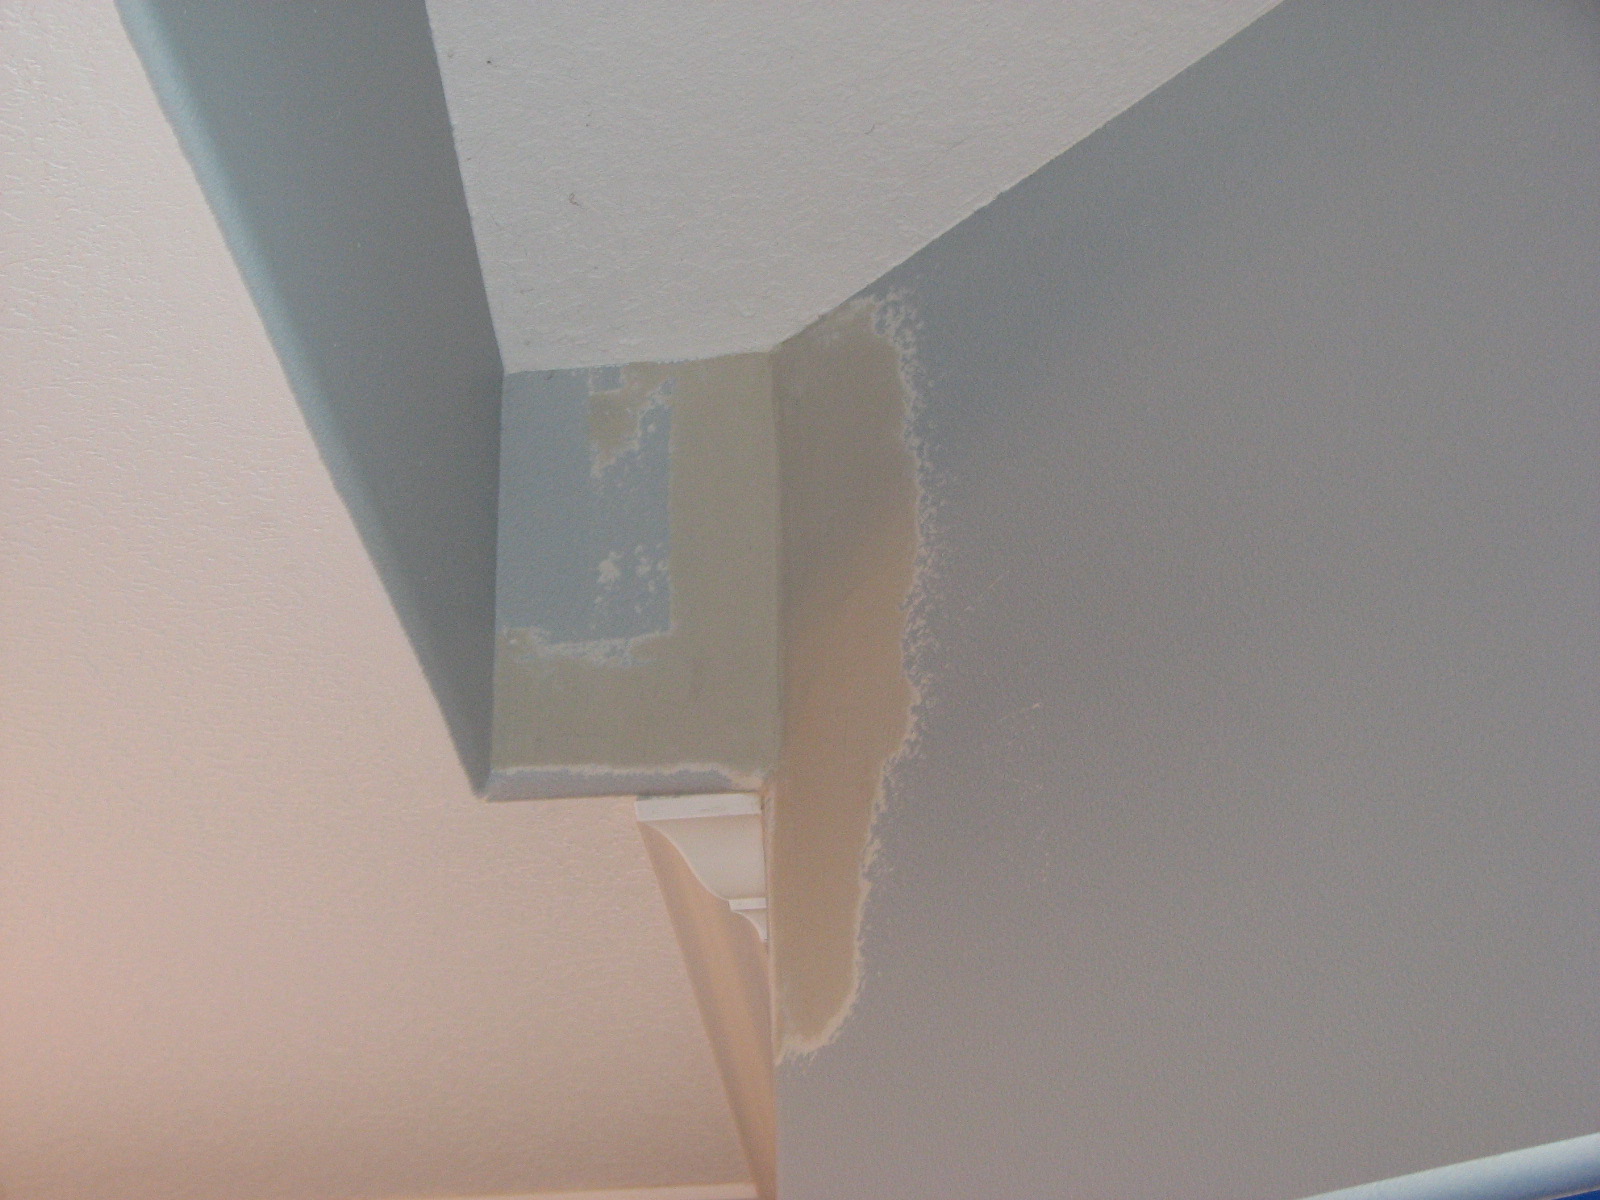 Orange Peel Ceiling-Port St Lucie Popcorn Ceiling Removal _ Drywall Repair Pros